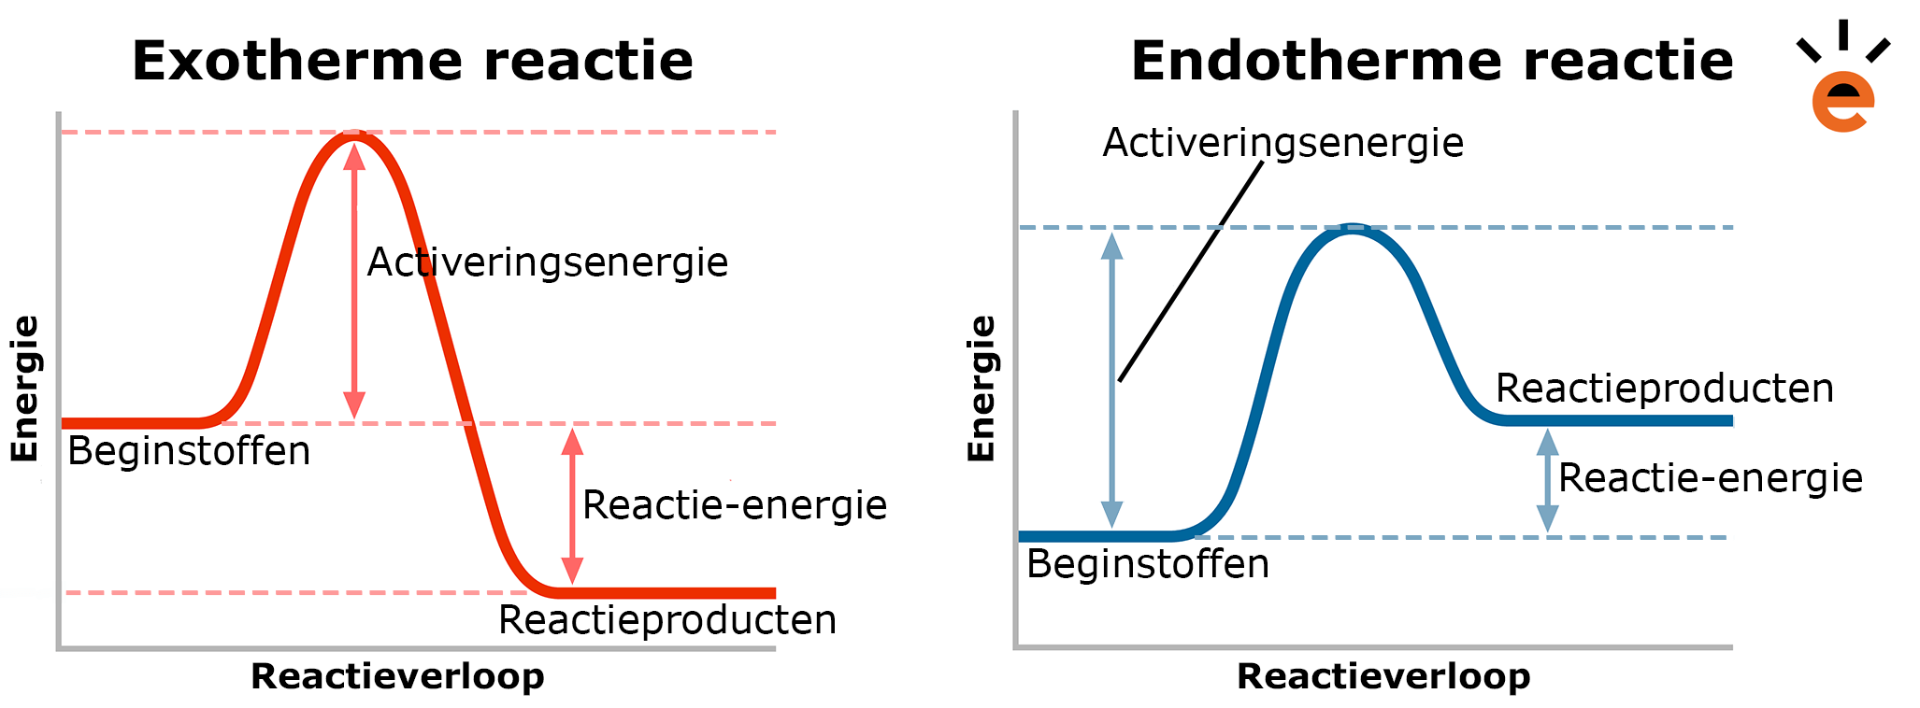 Endotherme en exotherme reacties in een reactiediagram